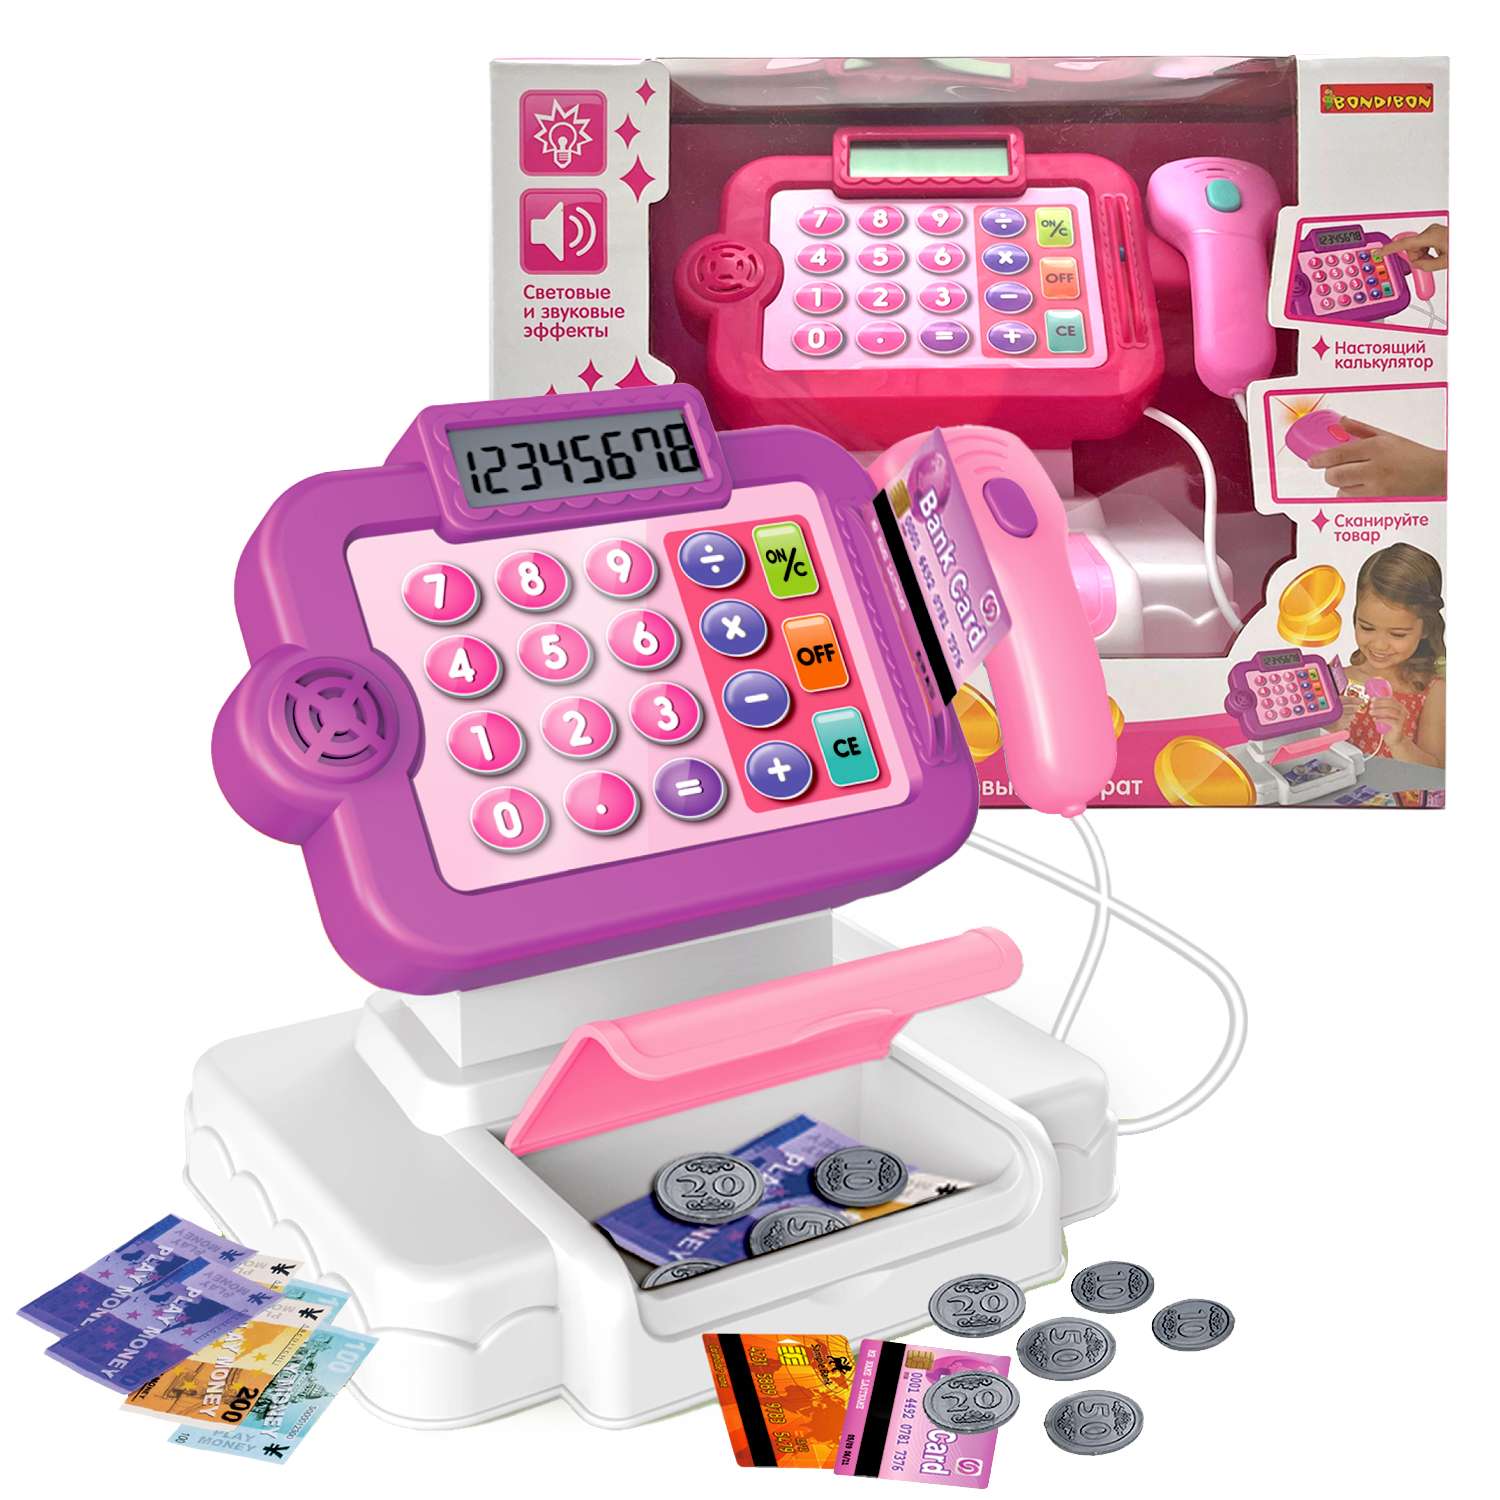 Развивающий игровой набор BONDIBON детская касса со сканером калькулятором и аксессуарами 14 предметов - фото 1